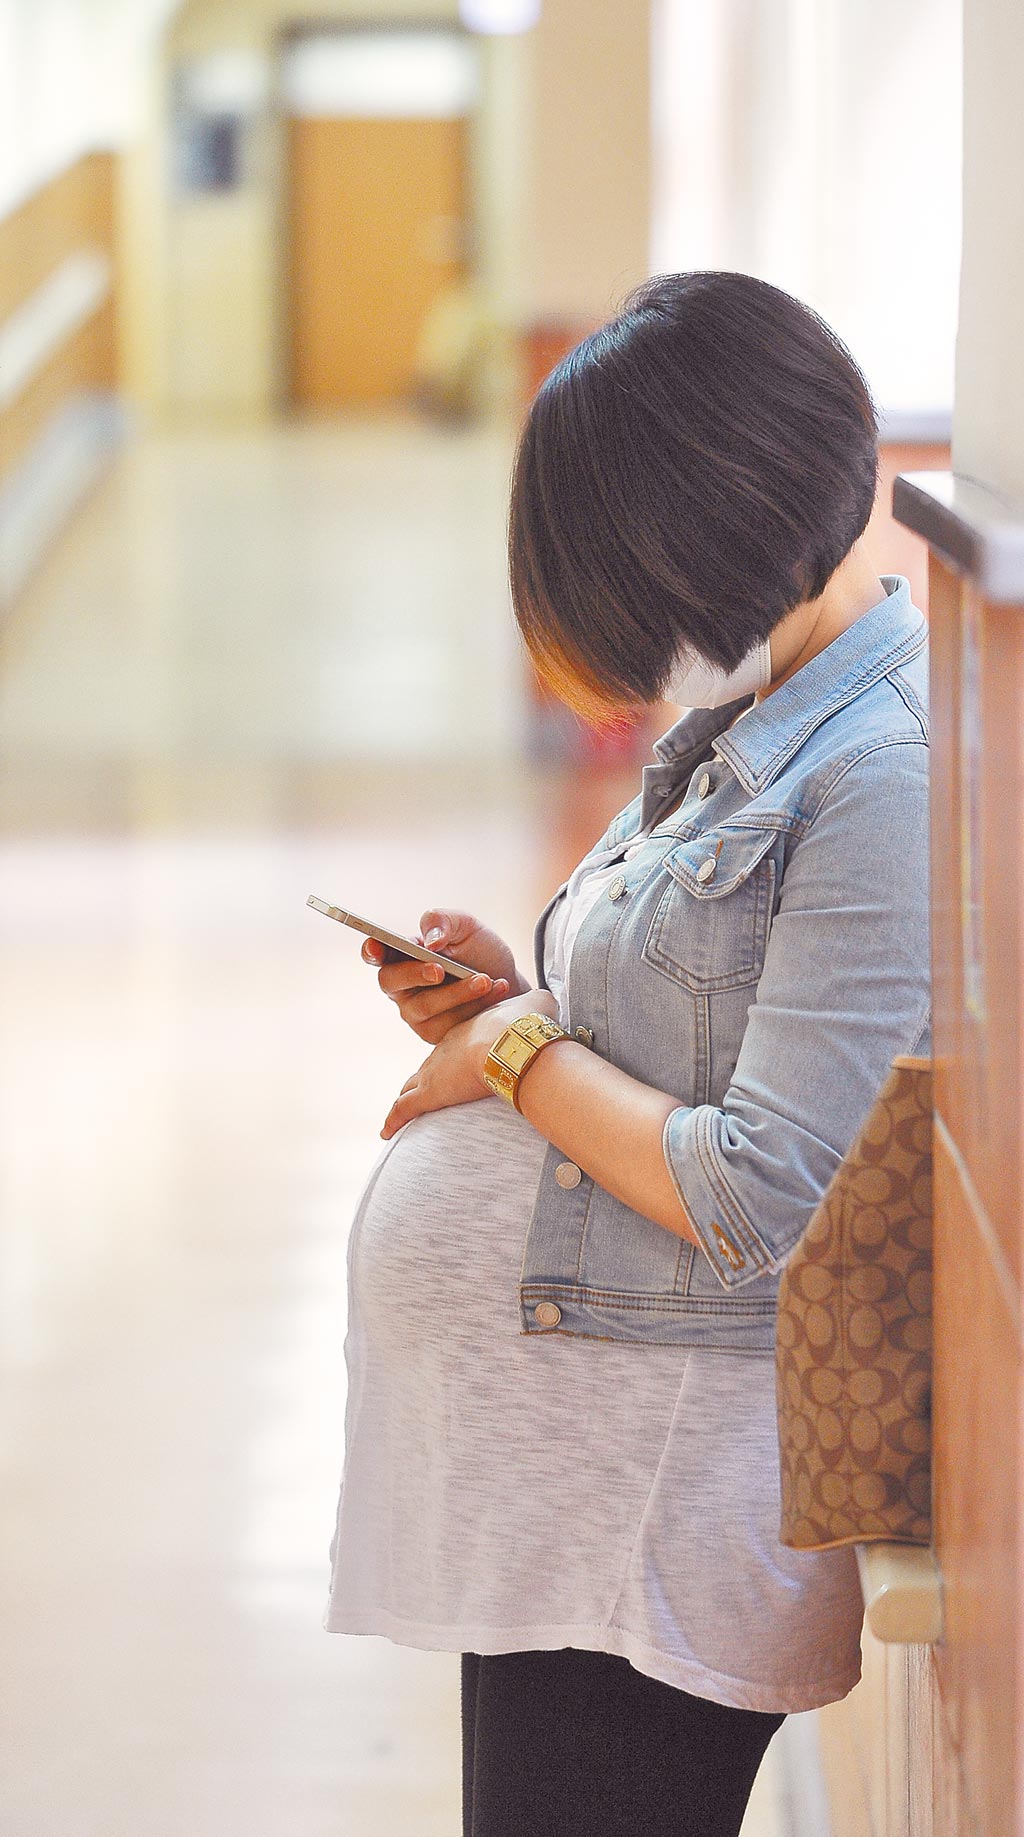 台灣代理孕母遲遲未能合法，使不少渴望成為母親的婦女，遠走海外求孕，一圓求子夢的最後希望。圖非事件當事人（本報資料照片）